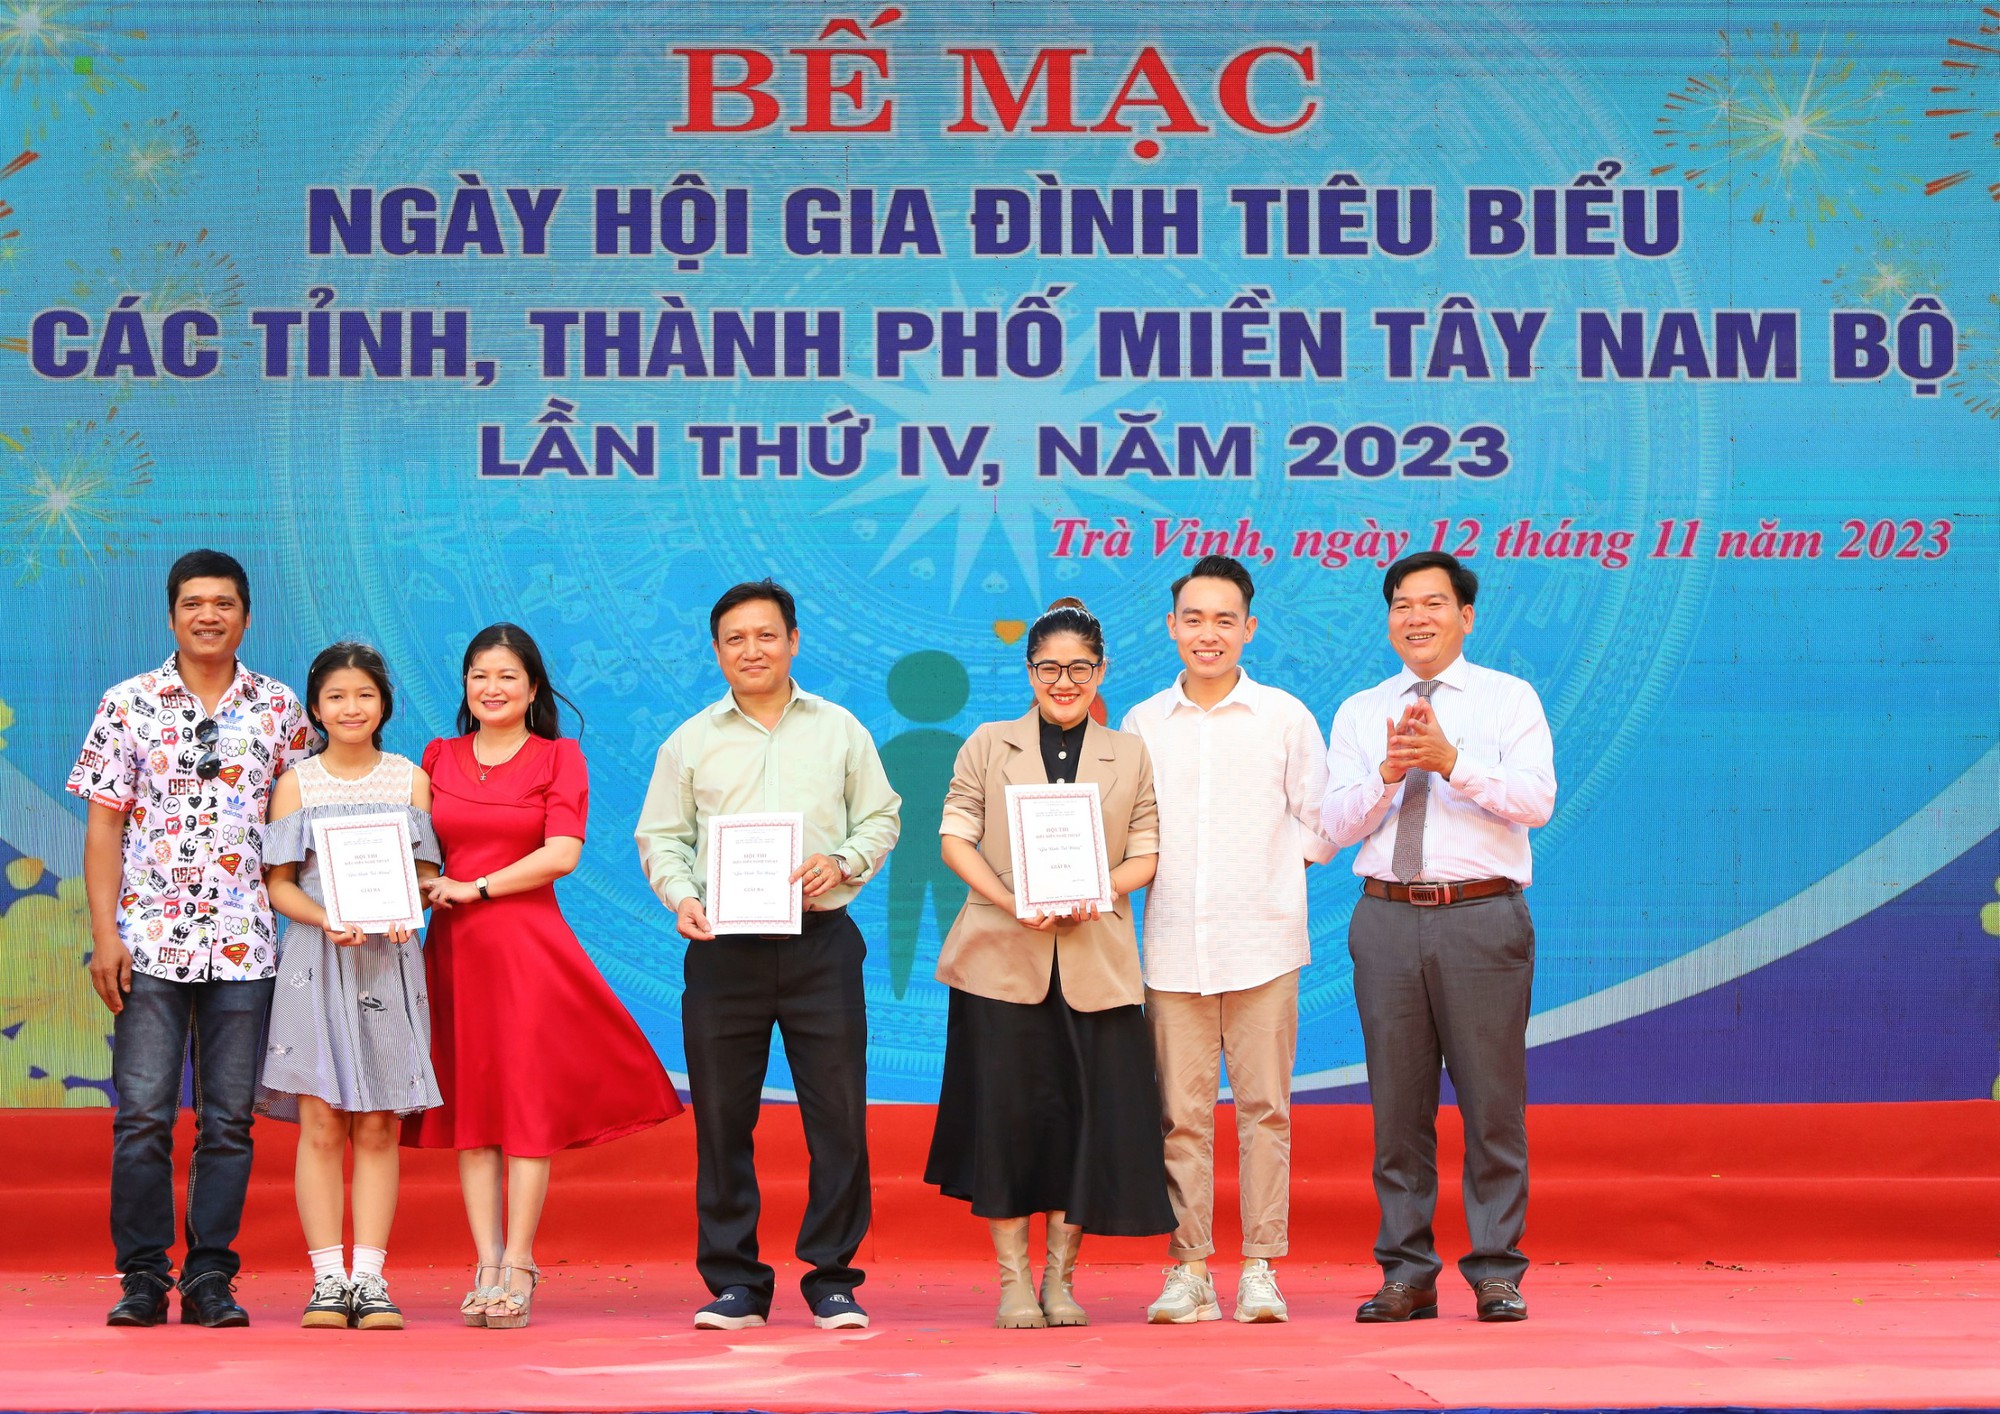 Bế mạc và trao giải Ngày hội Gia đình tiêu biểu miền Tây Nam Bộ - Ảnh 11.